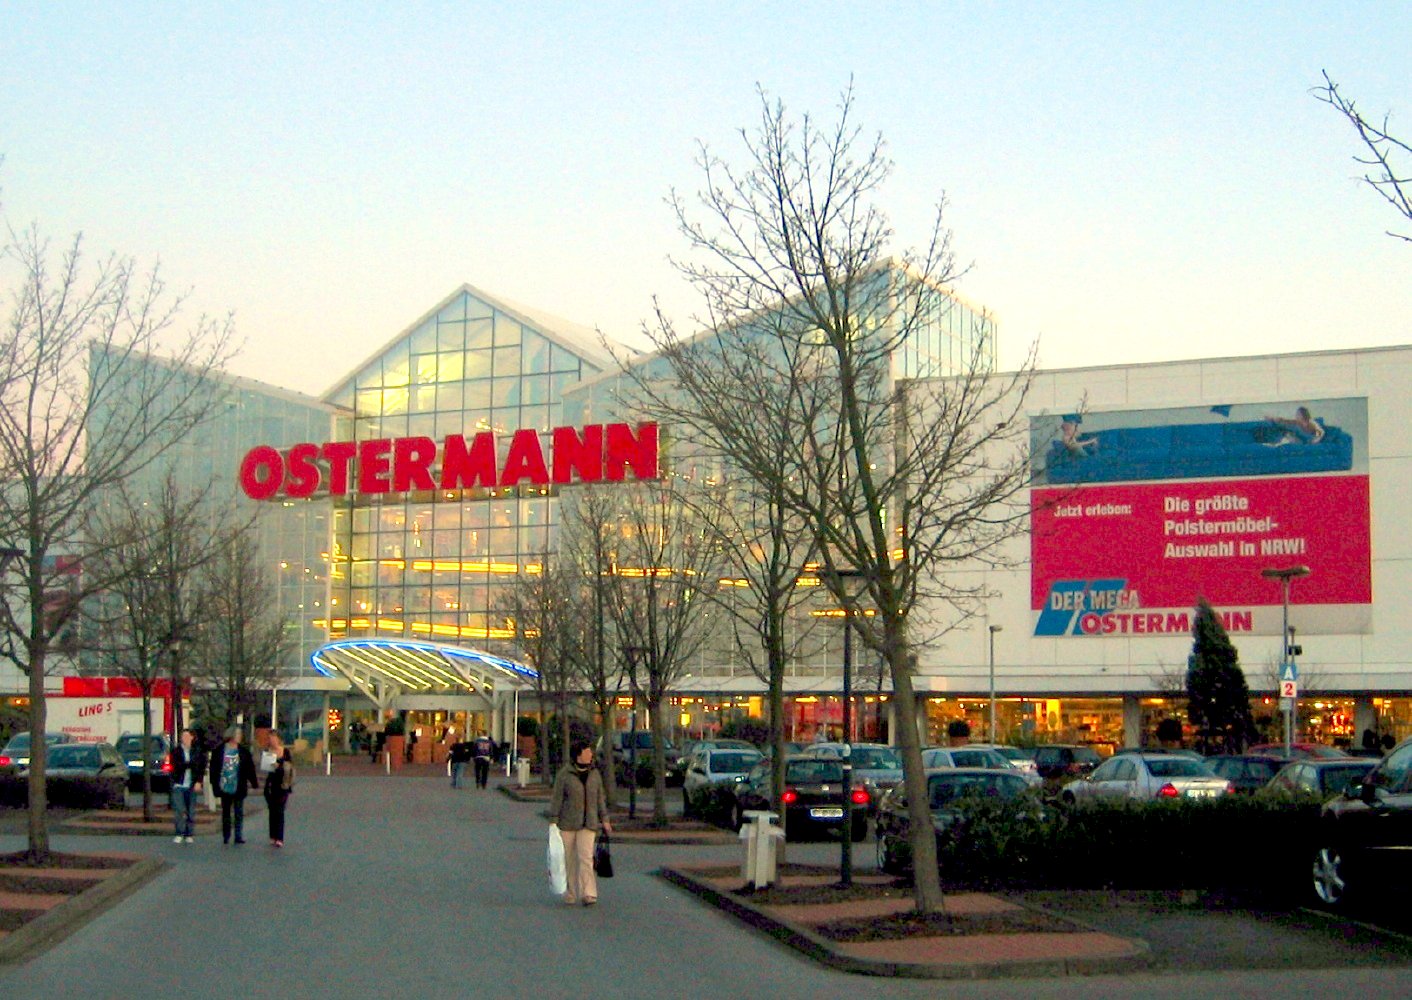 Ostermann (Möbelhaus)